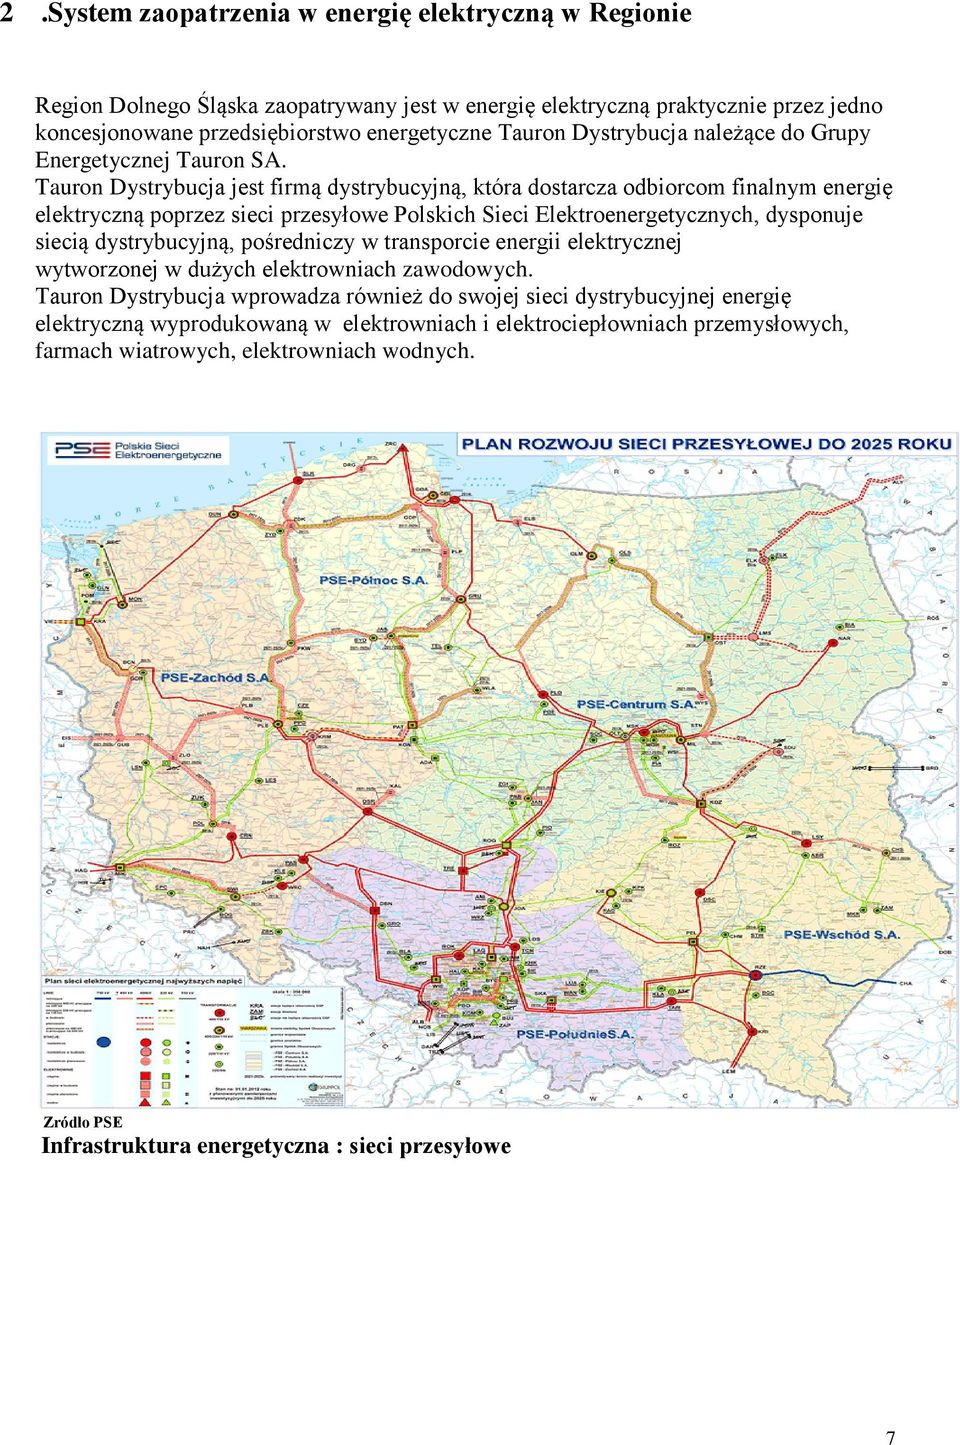 Tauron Dystrybucja jest firmą dystrybucyjną, która dostarcza odbiorcom finalnym energię elektryczną poprzez sieci przesyłowe Polskich Sieci Elektroenergetycznych, dysponuje siecią dystrybucyjną,